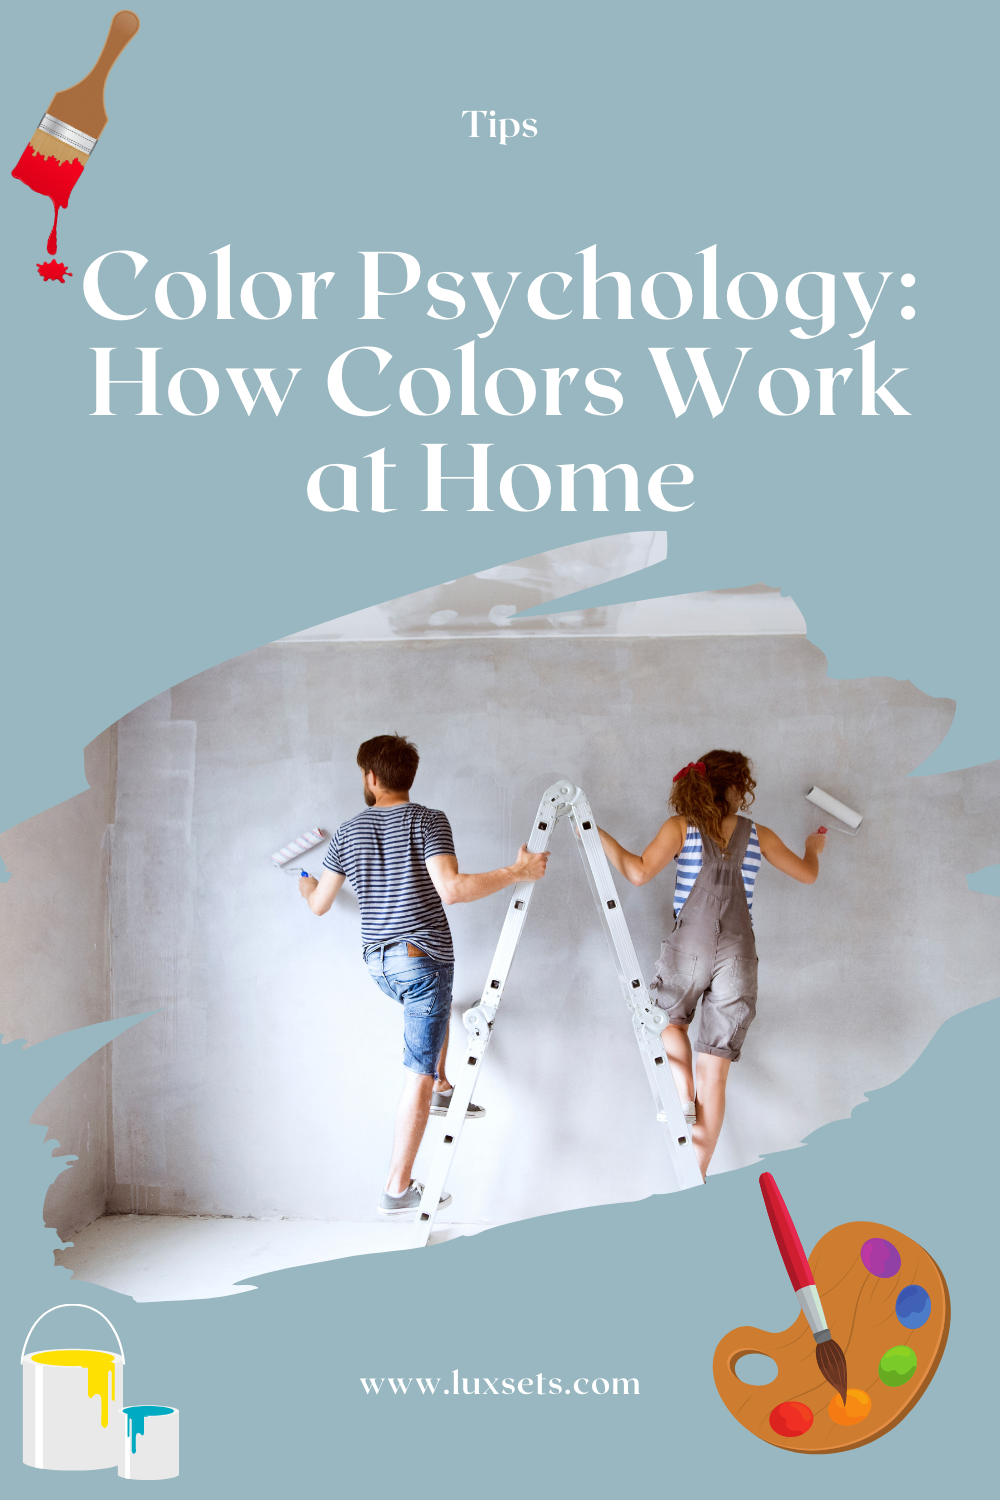 Luxsets Color Psychology